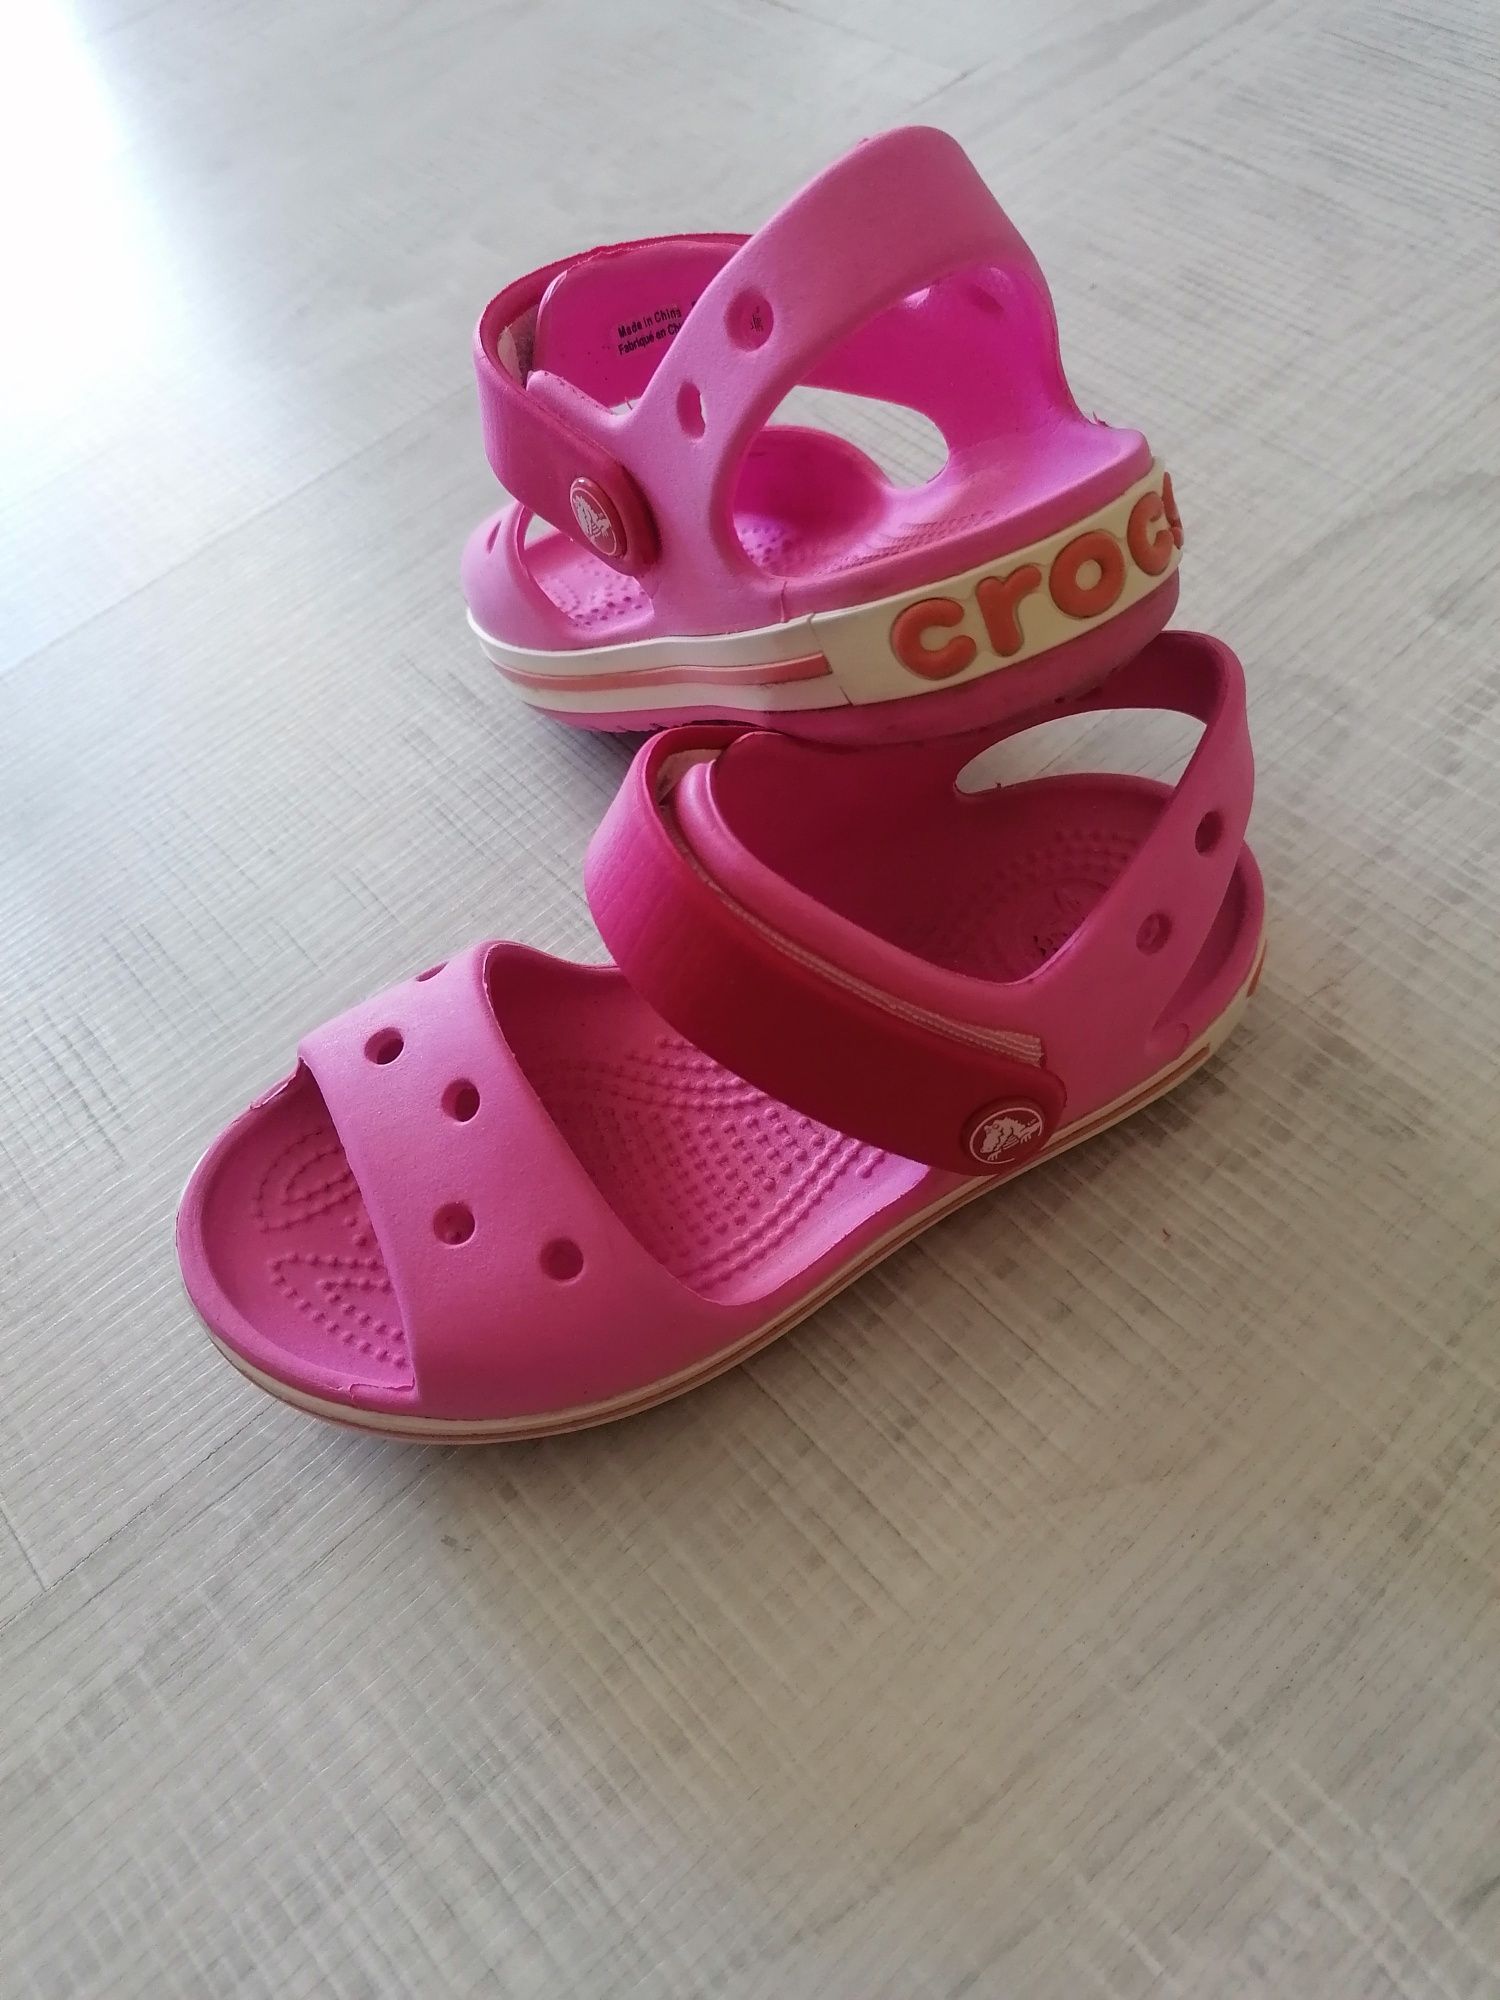 Детски сандалки Crocs, размер С10 -27-28ми